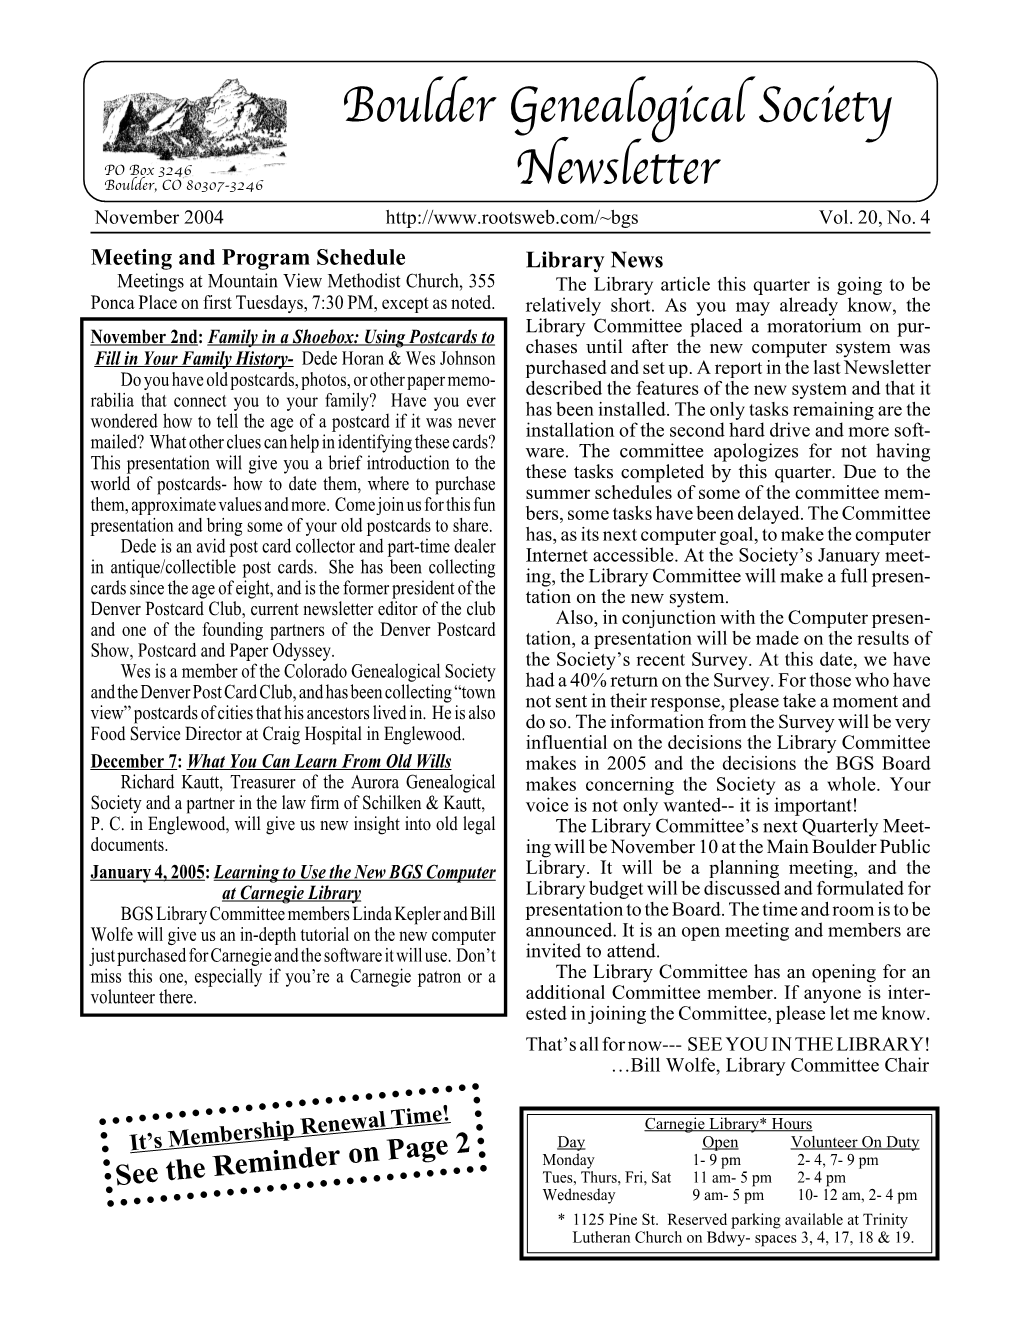 Boulder Genealogical Society Newsletter Vol